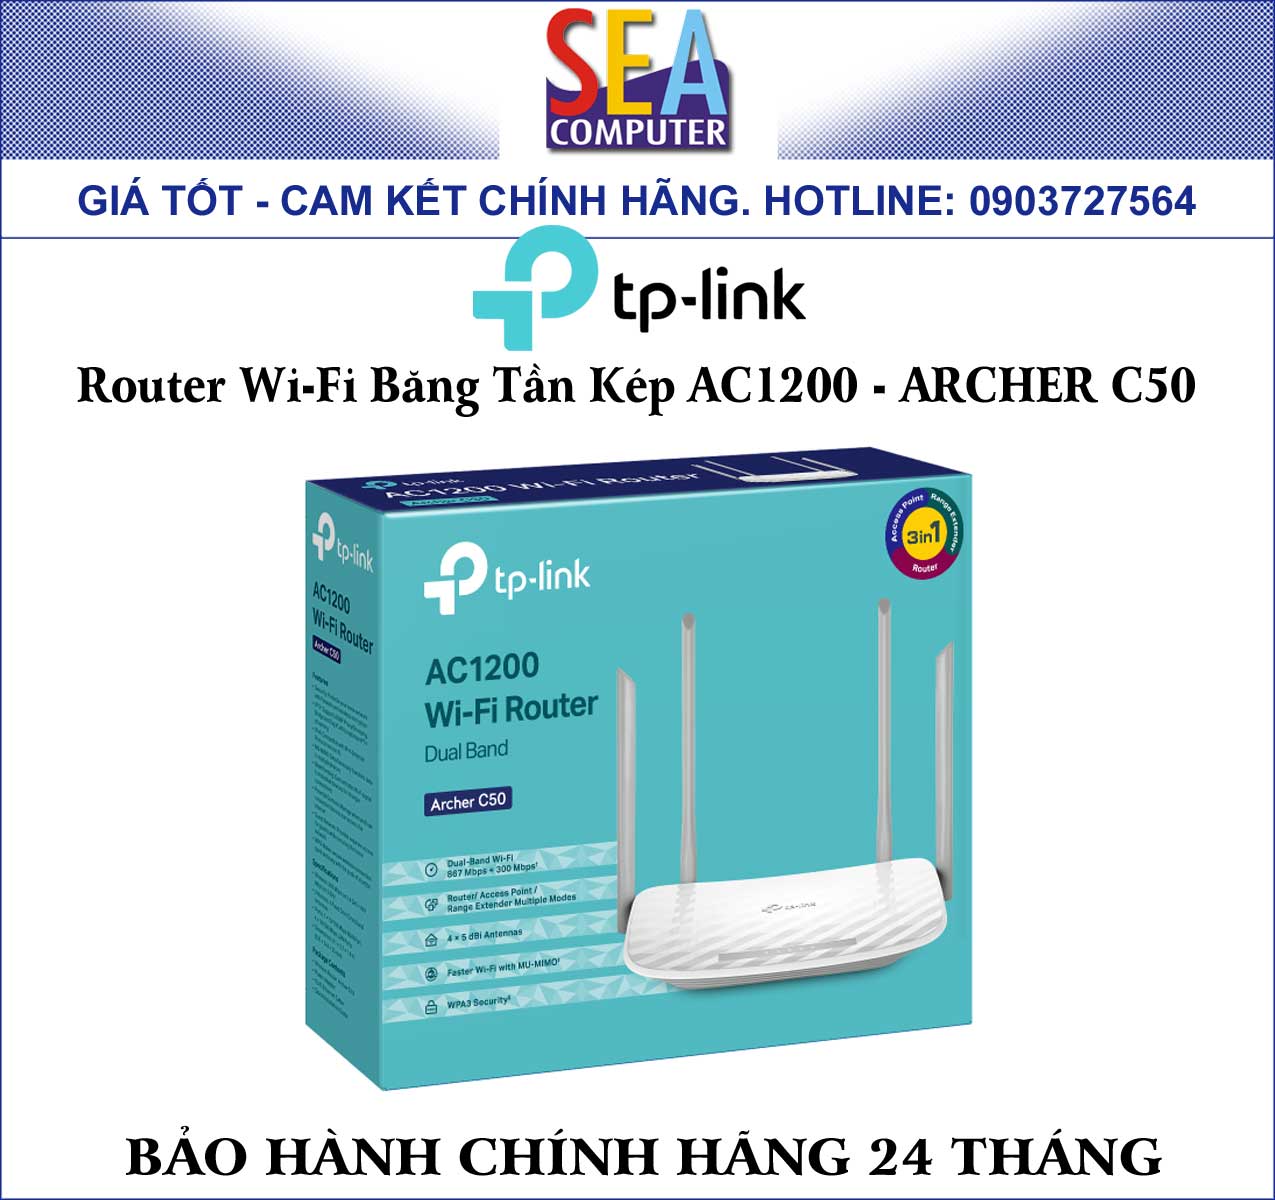 TP-LINK Router Wi-Fi Băng Tần Kép AC1200 - ARCHER C50